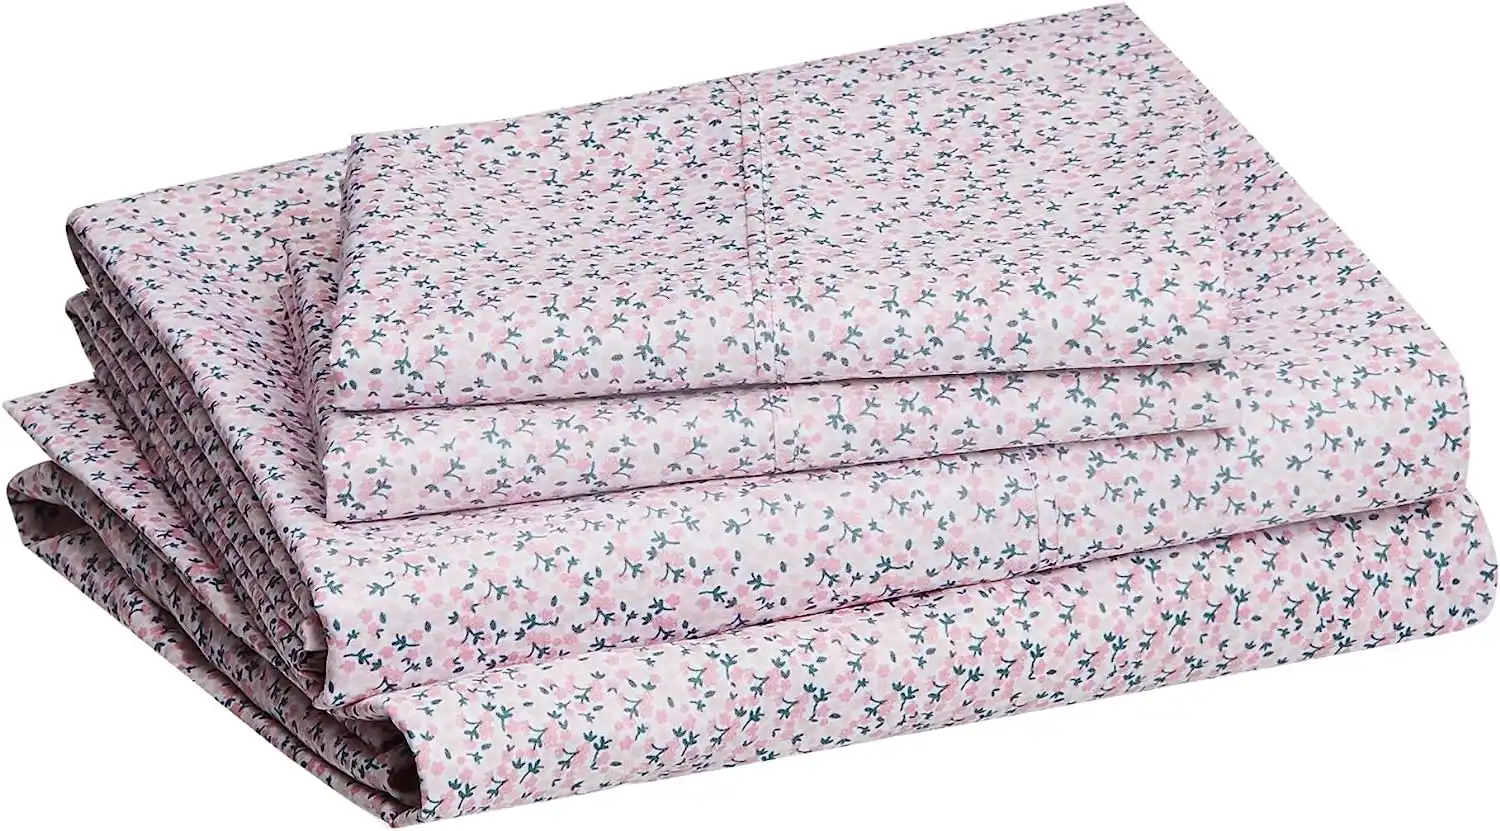 King Size Microfiber Bed Sheet Set, Lightweight Super Soft, 36 cm Deep Pockets, Easy Care, Pink Mini Floral